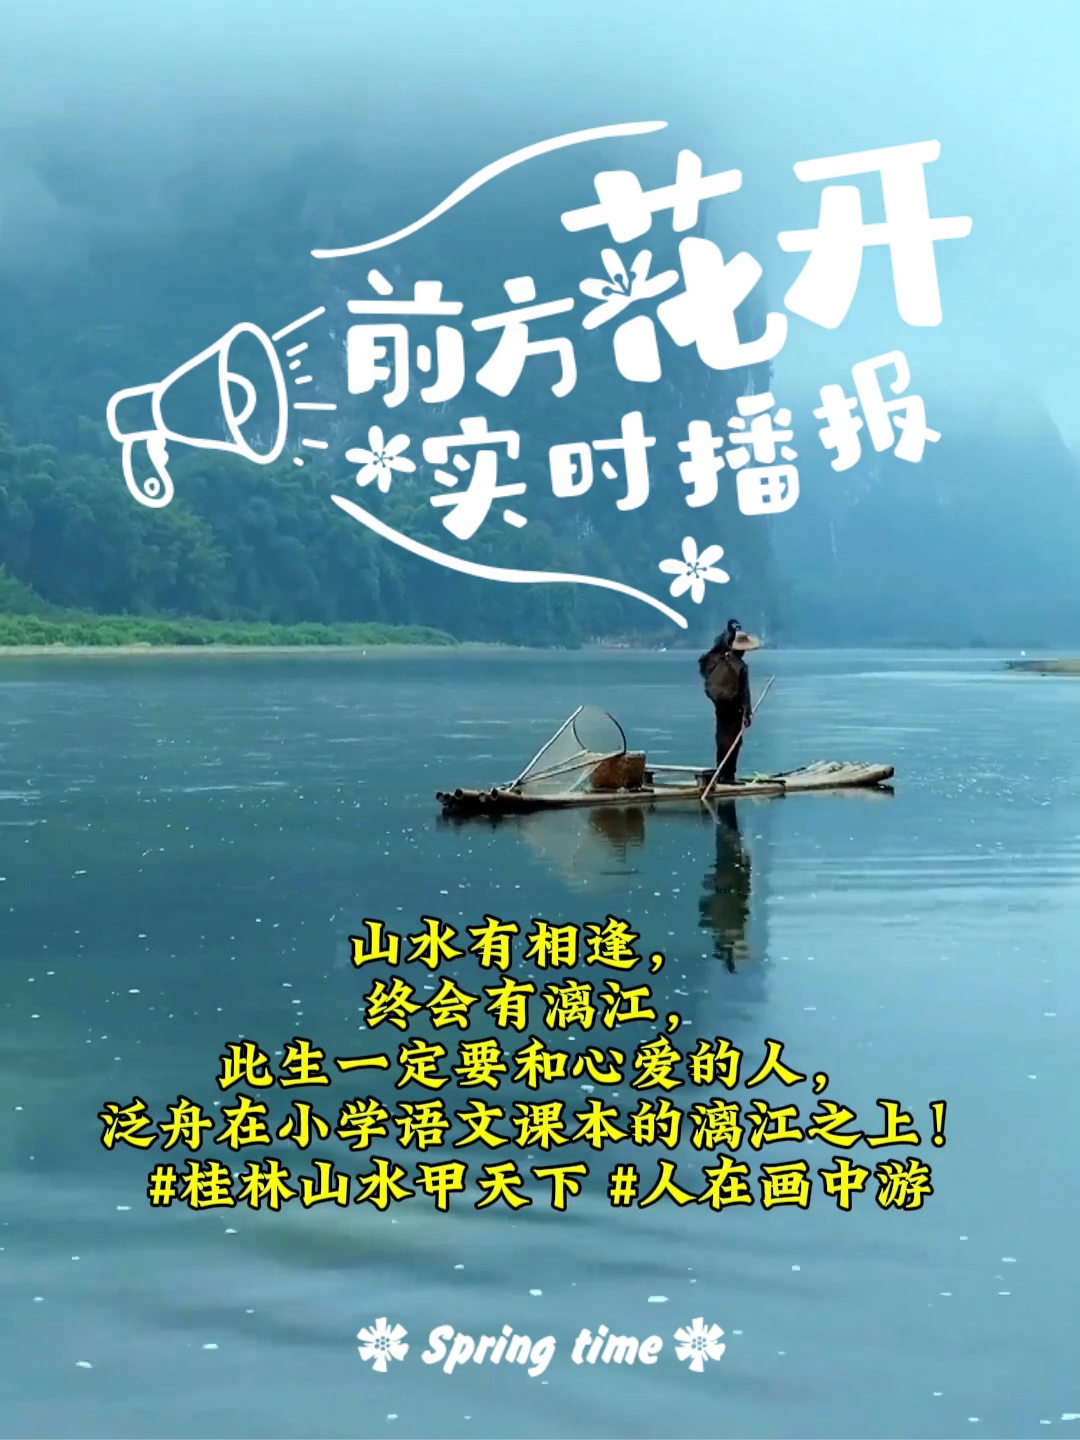 山水有相逢，终会有漓江，此生一定要和心爱的人，泛舟在小学语文课本的漓江之上！#桂林山水甲天下 #人在